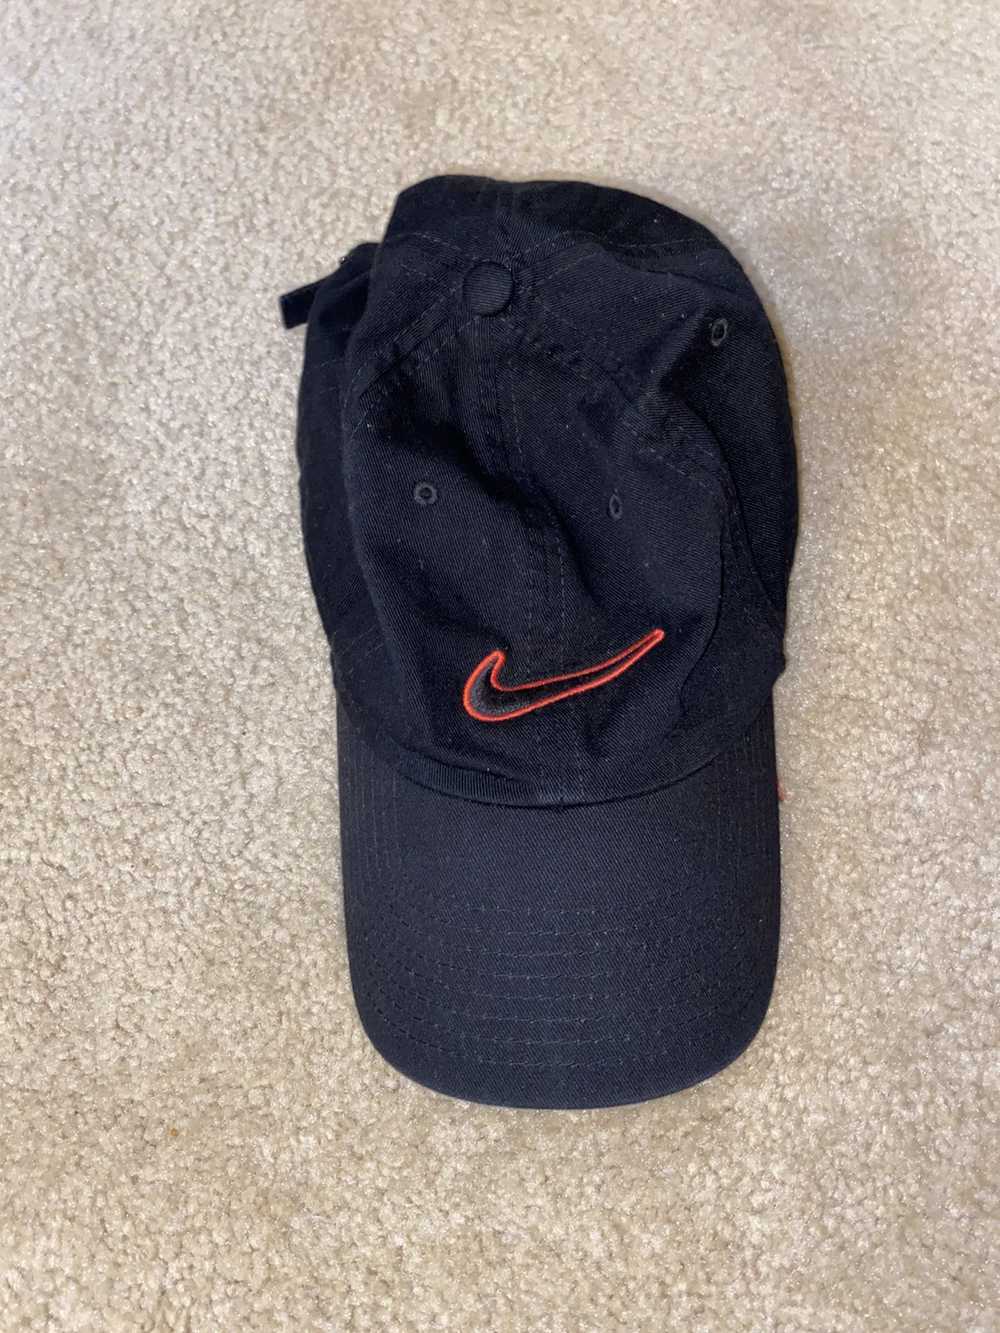 Nike Nike cap/ hat - image 1